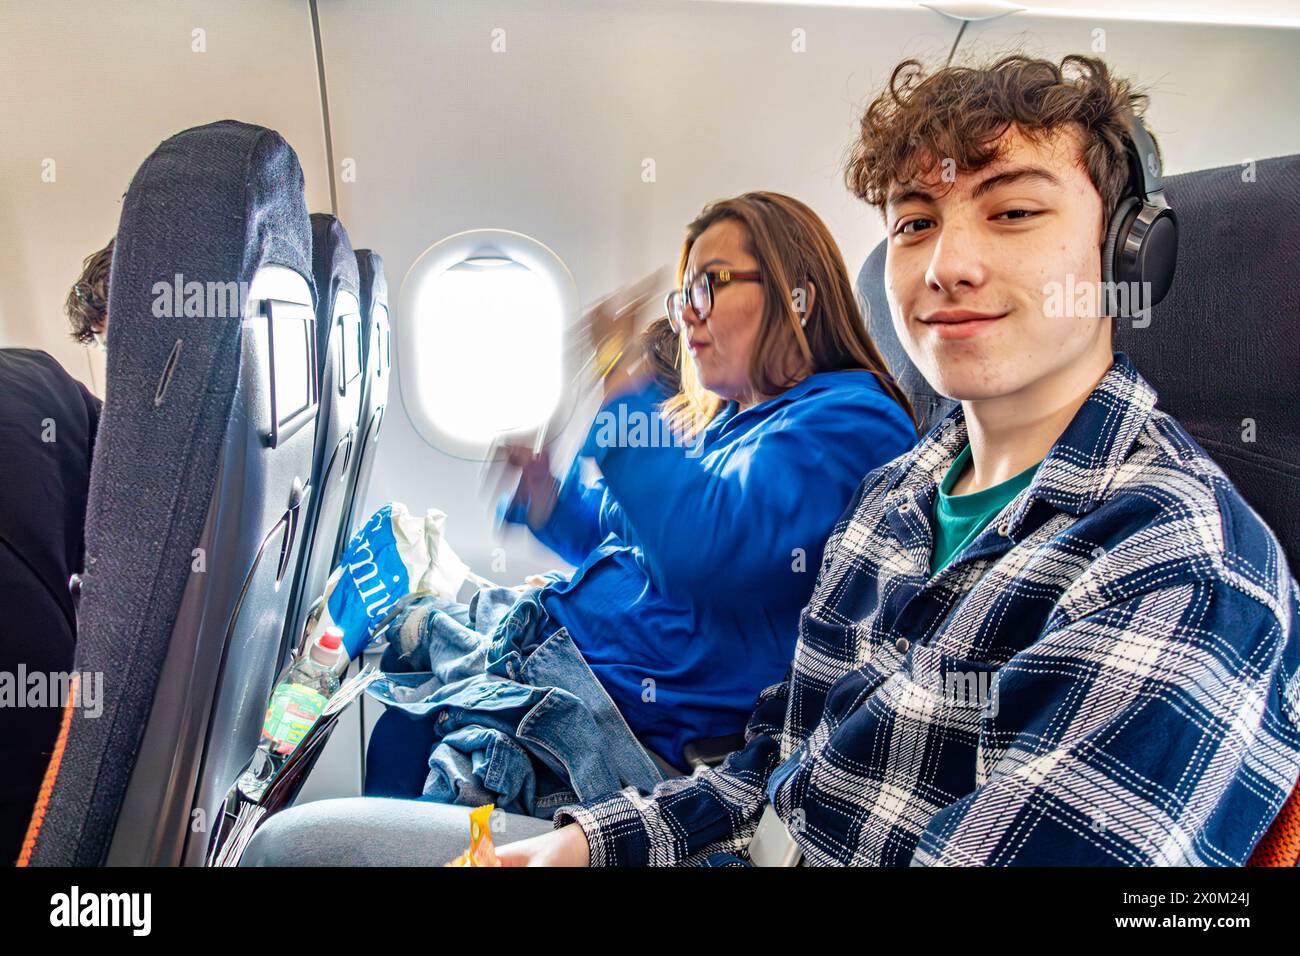 Una famiglia siede insieme a bordo di un aereo, un volo easyJet. Un adolescente si siede accanto alla sua mamma e sorride per la telecamera Foto Stock